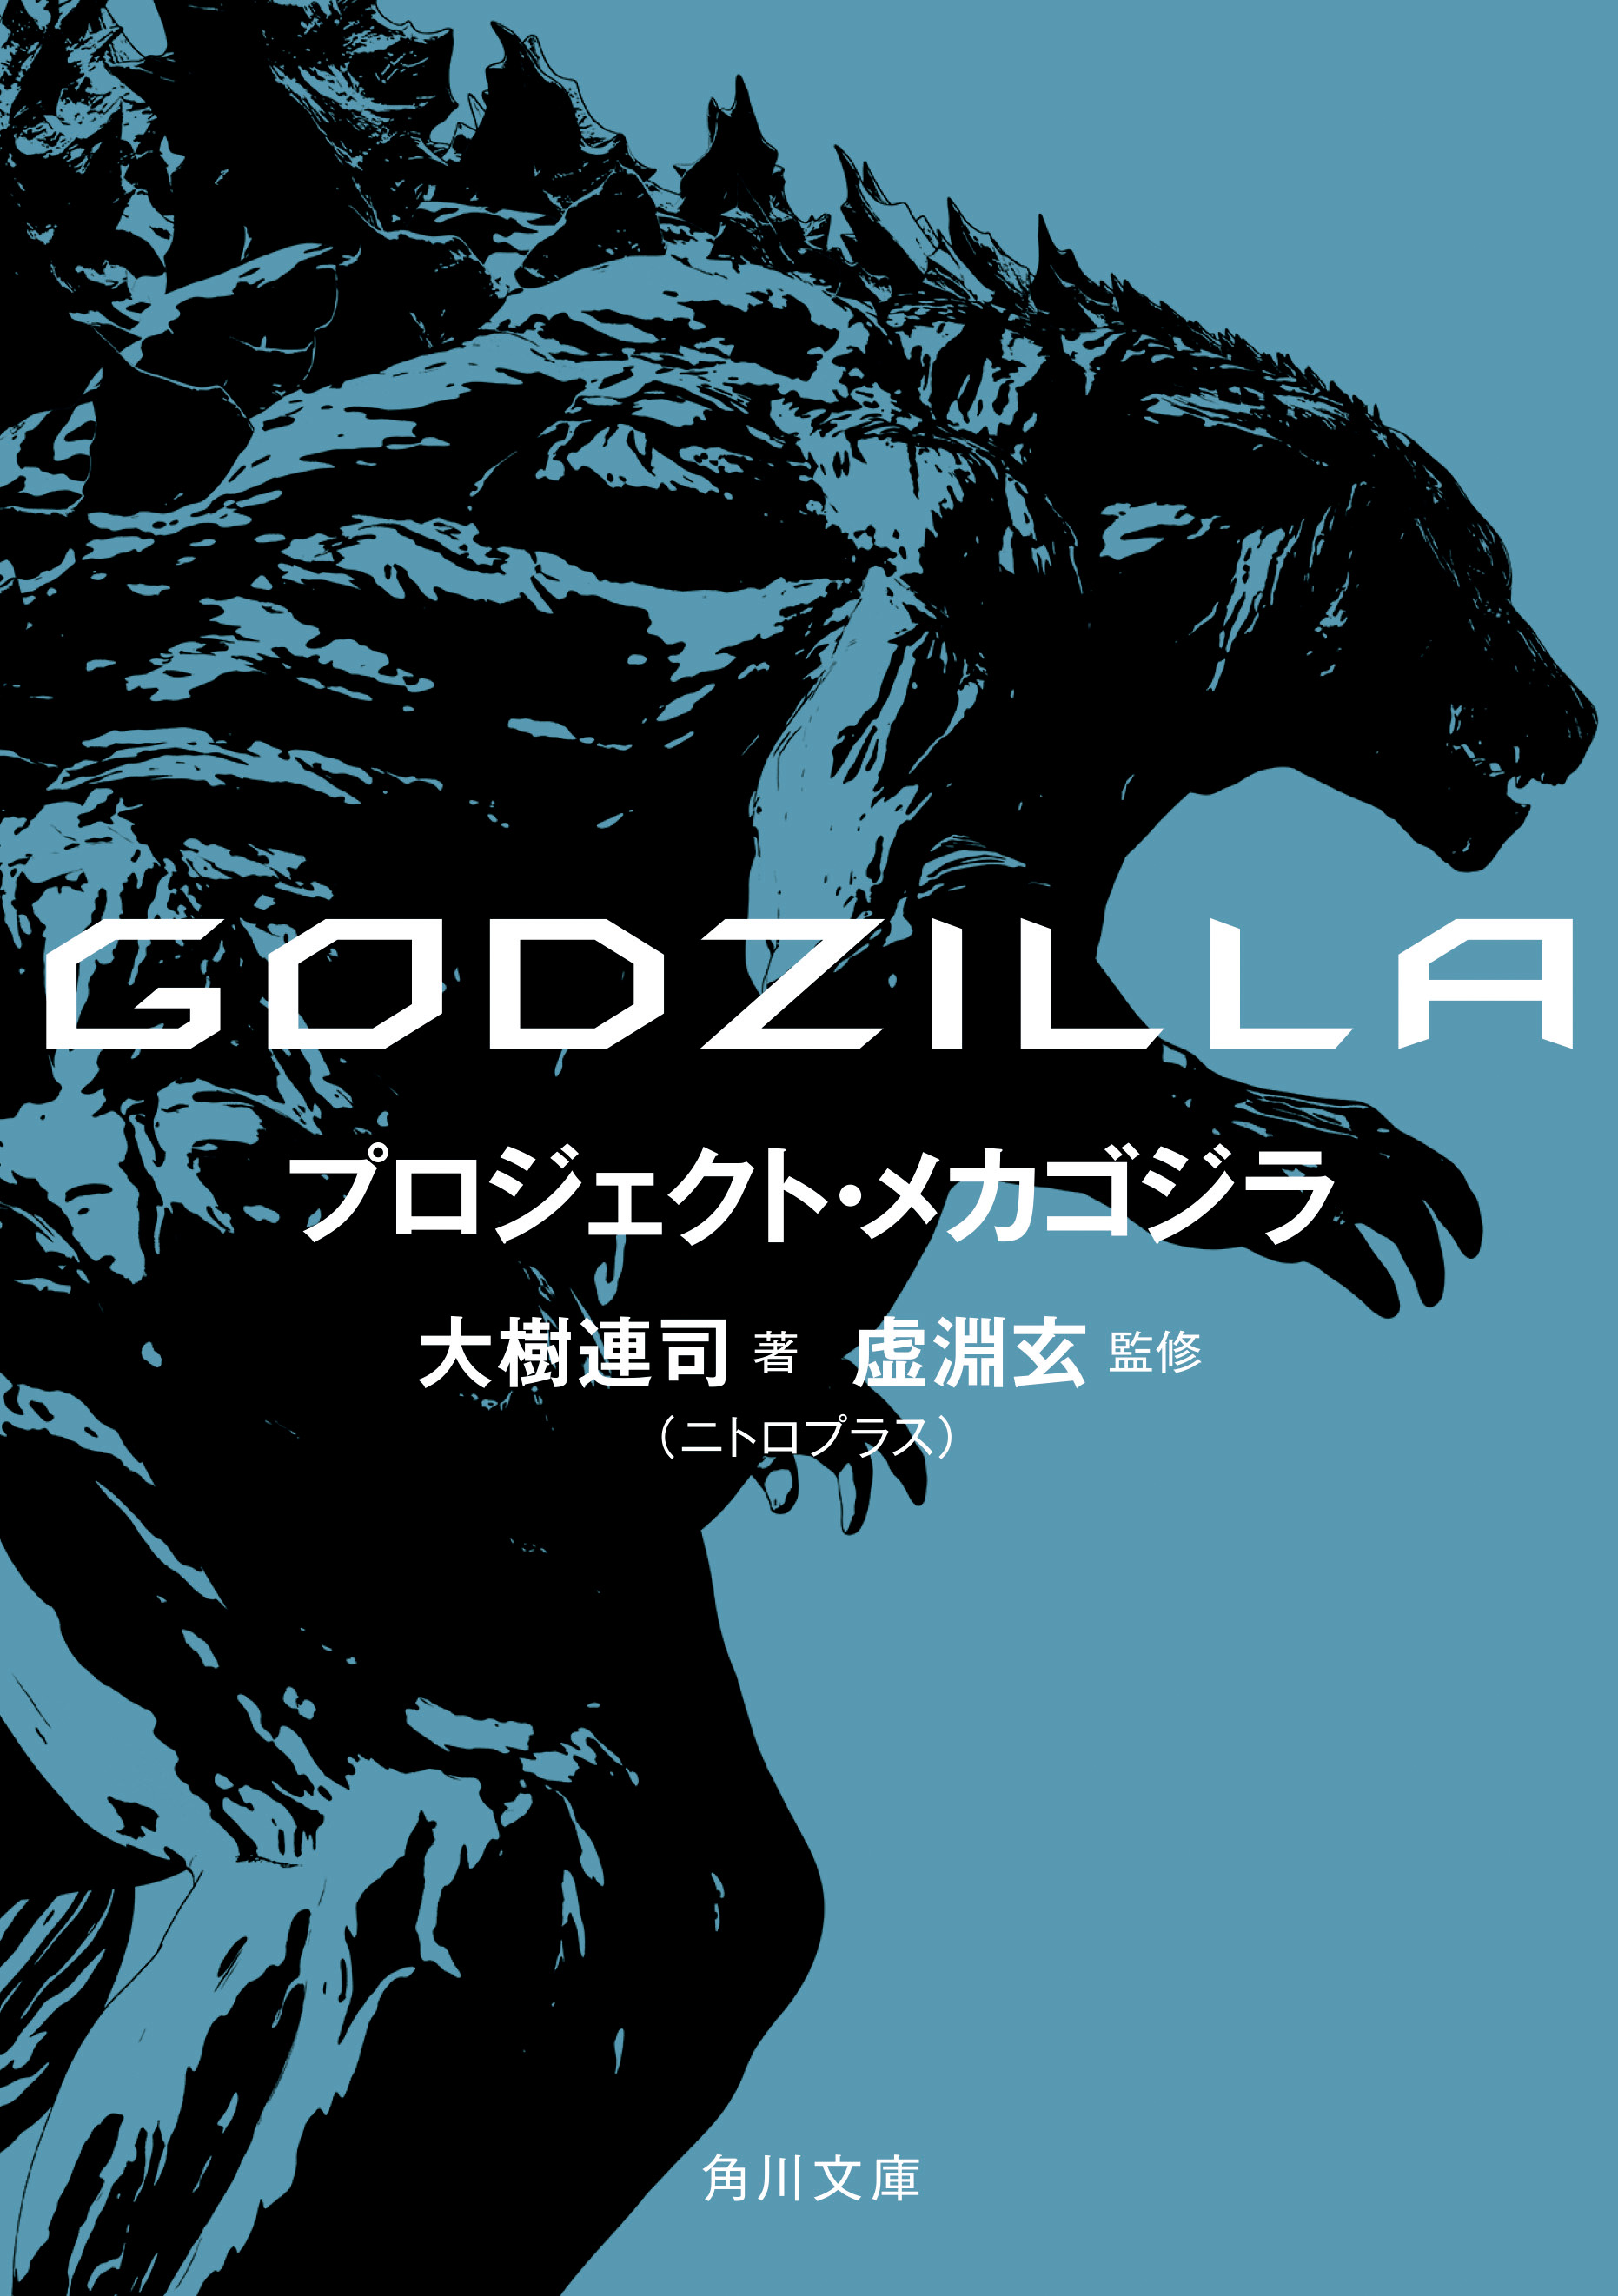 アニゴジ映画前史ノベライズ第二弾 Godzilla プロジェクト メカゴジラ 4 25発売決定 株式会社kadokawaのプレスリリース